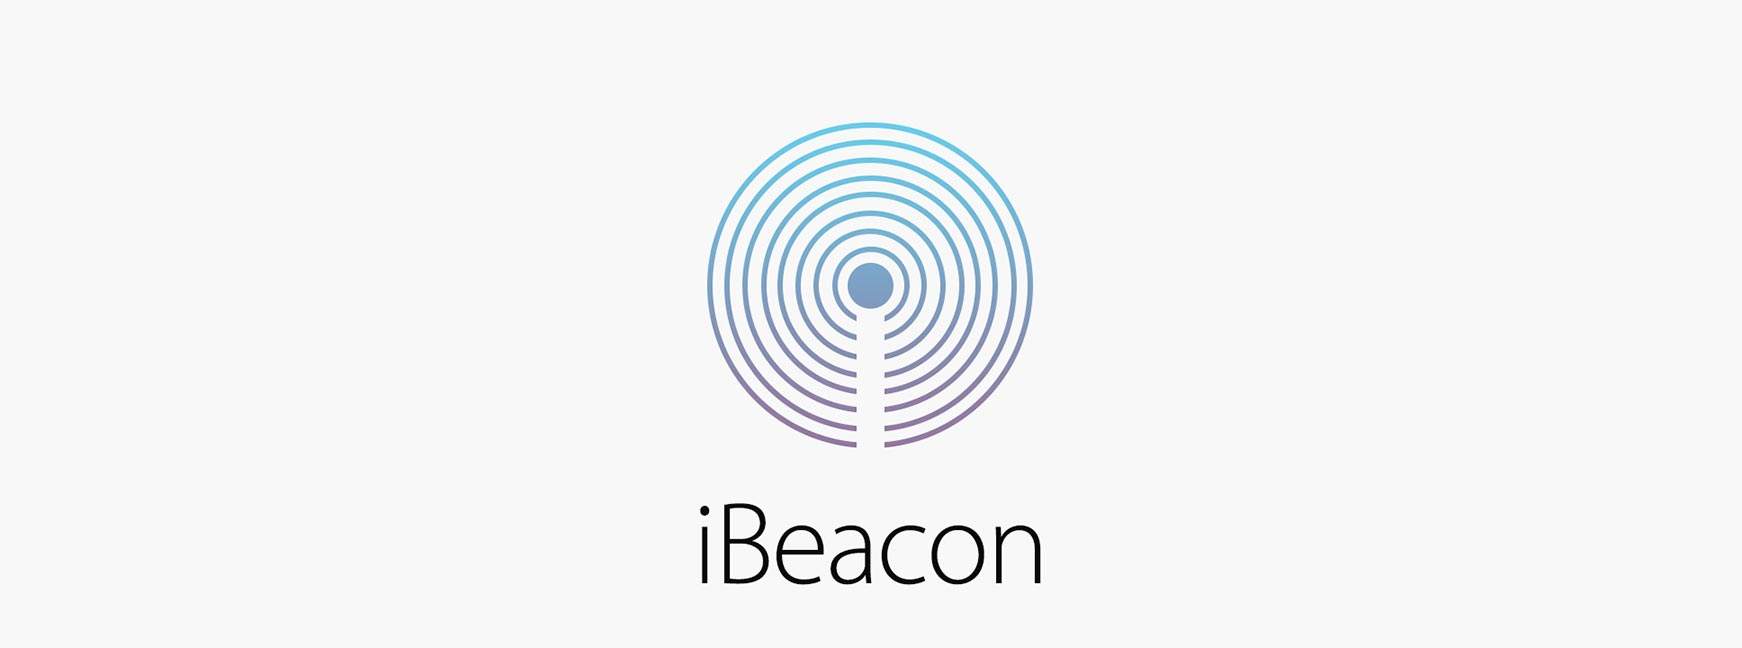 ビーコンの戦い: エディストーン vs. iBeacon